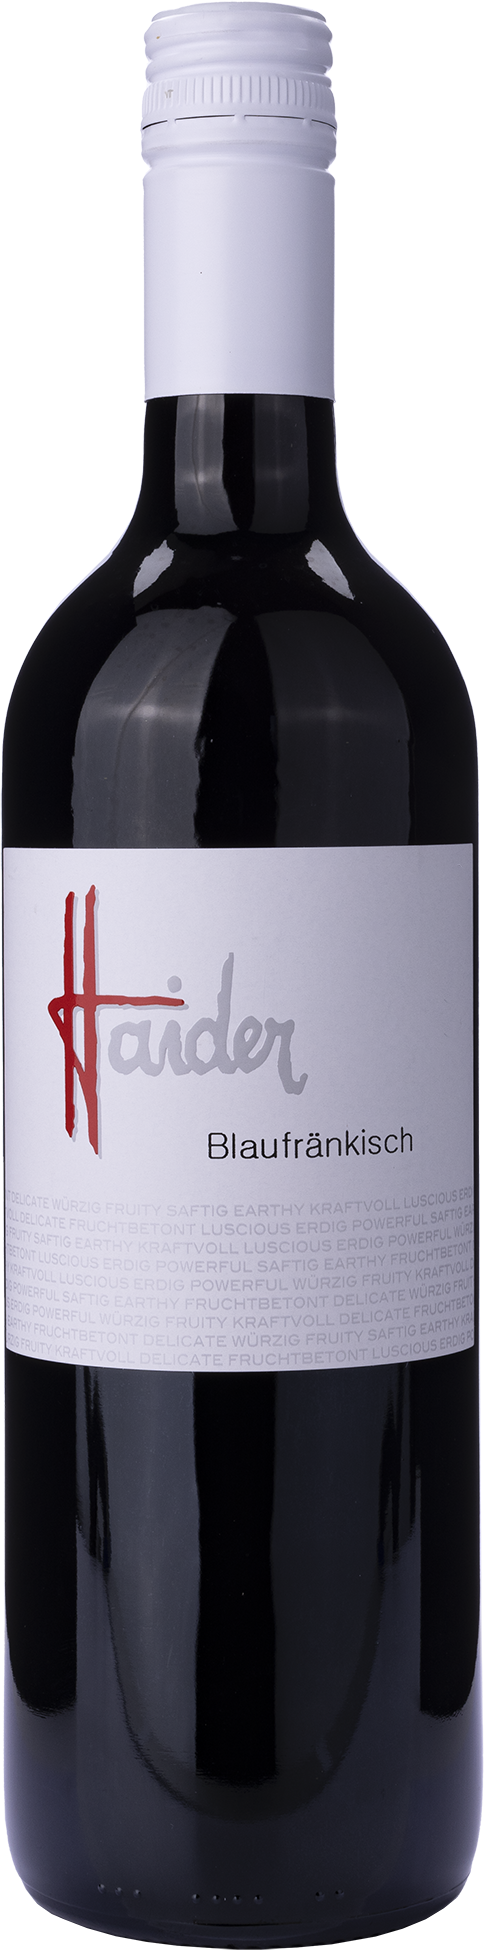 Blaufränkisch 2018 - Haider